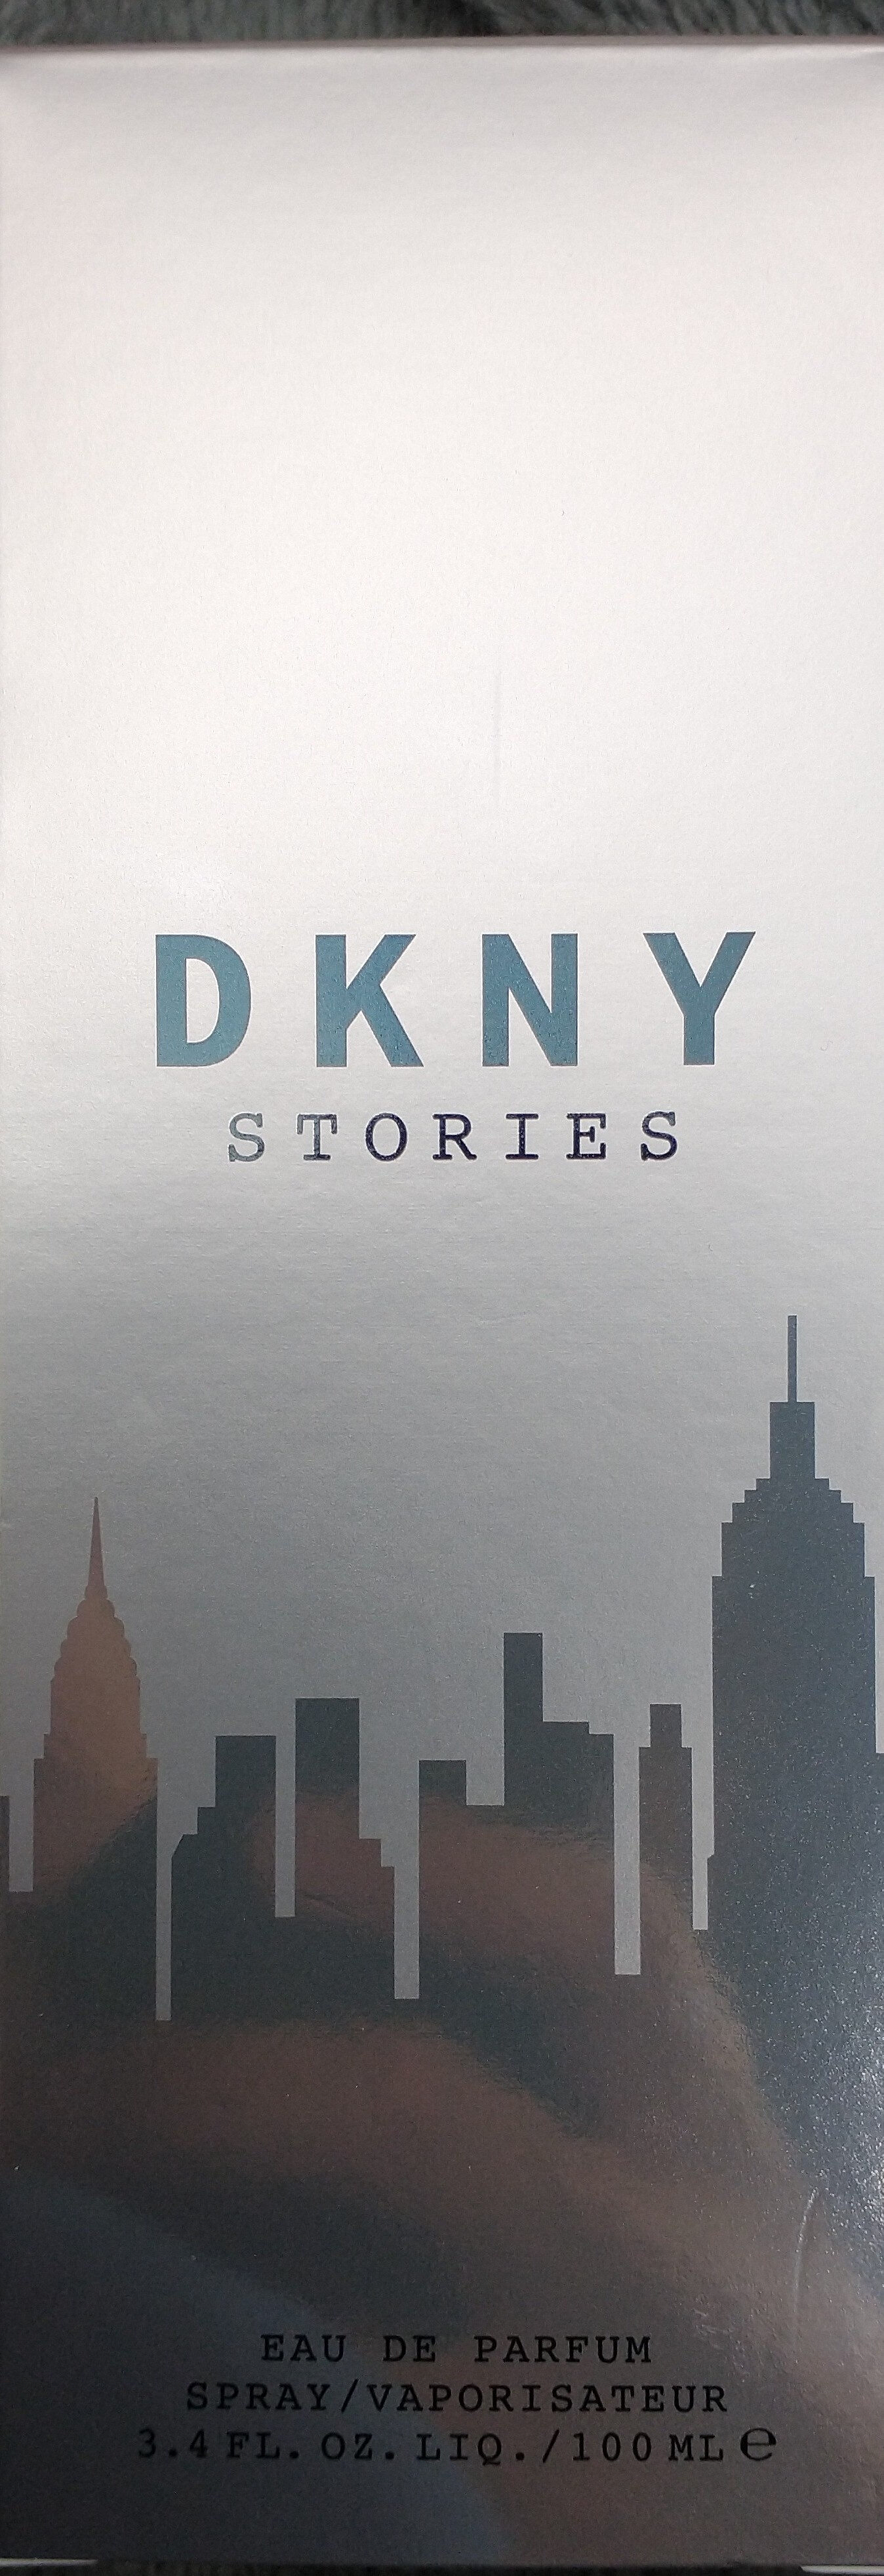 DKNY Stories - Tuote - de